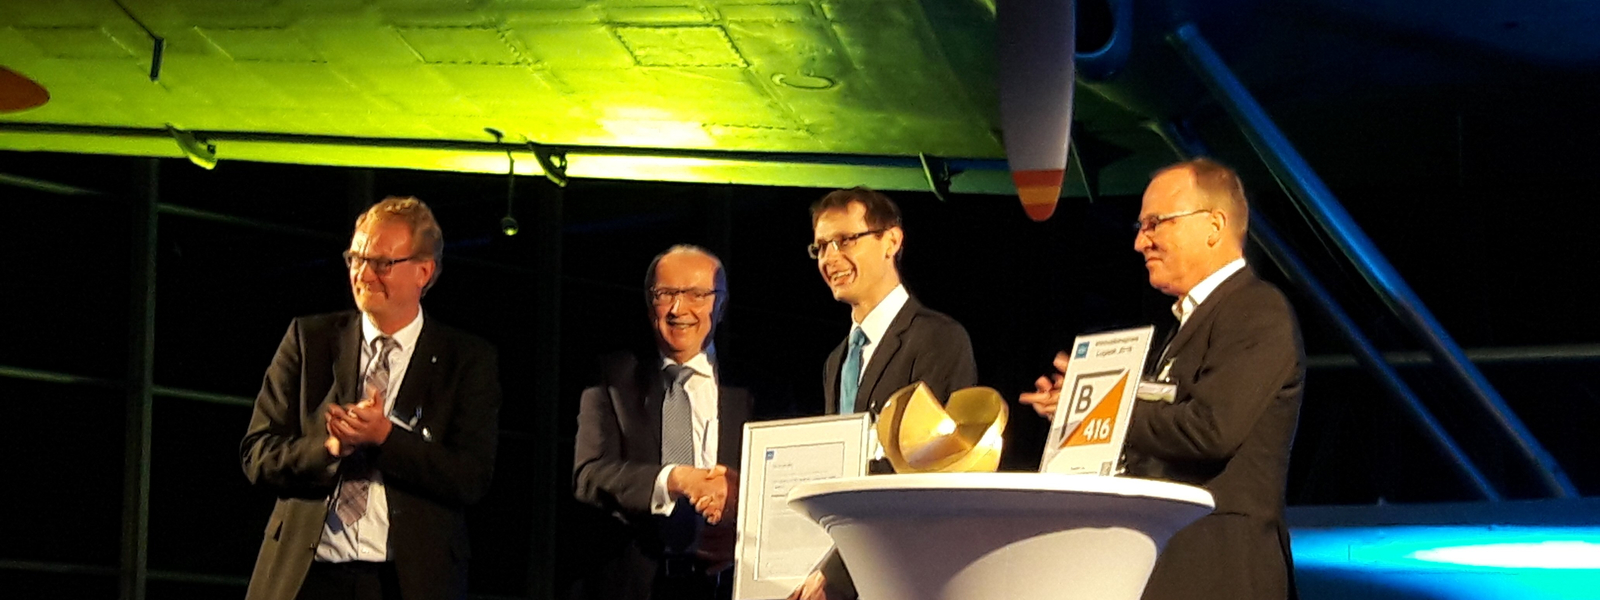 Preisverleihung des VDI-Innovationspreis Logistik 2018 in der Flugwerft Schleißheim. Im Bild v.l.n.r.: Jean Haeffs (VDI), Prof. Günthner (TU München), Nandor Schmaus (Schmaus GmbH), Gregor Blauermel (B416 Unternehmensberatung).